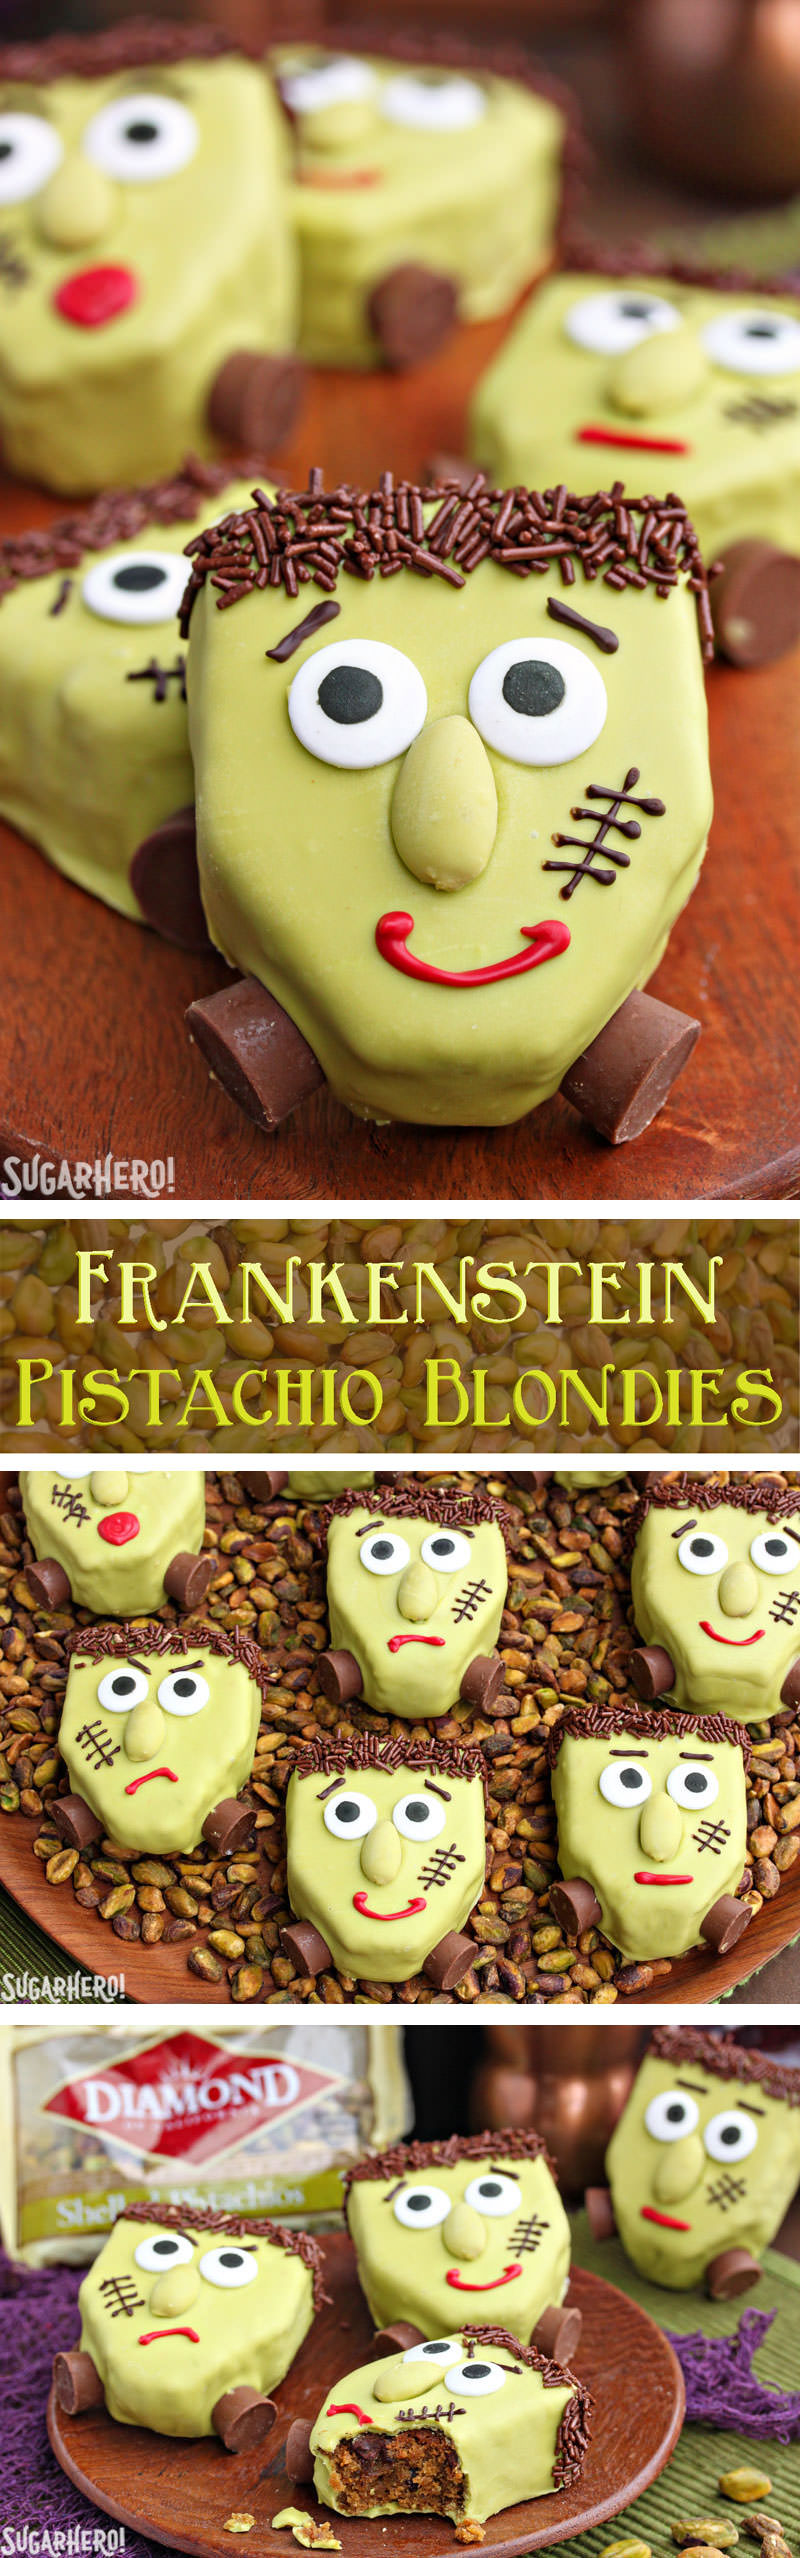 Frankenstein Pistachio Blondies | From SugarHero.com